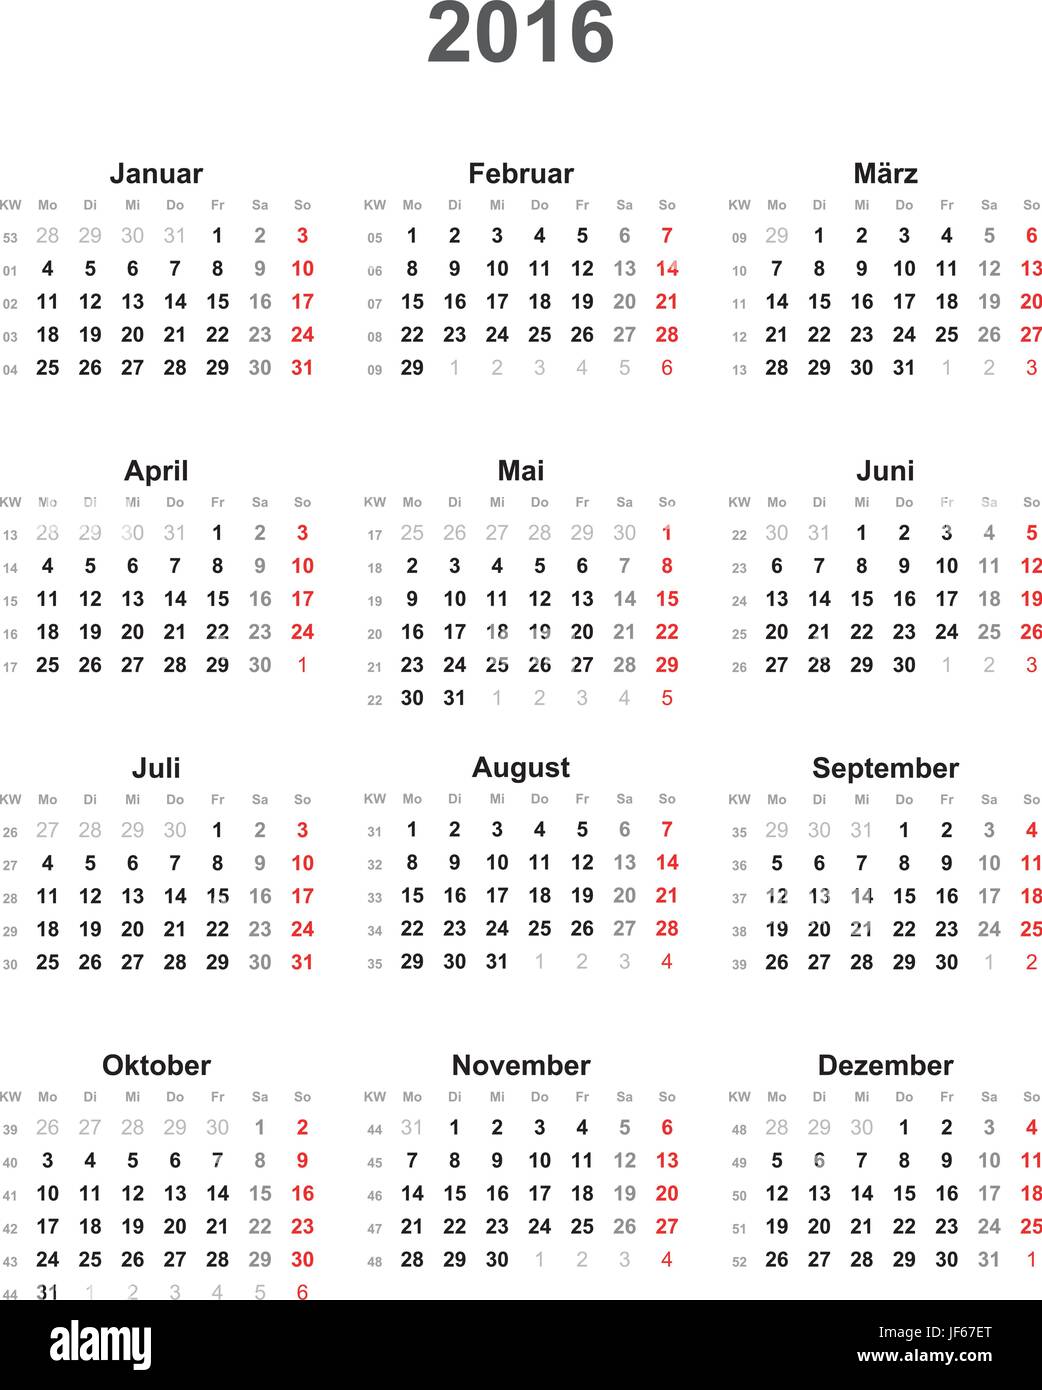 beloning voordeel geeuwen Kalender mit kalenderwochen hi-res stock photography and images - Alamy